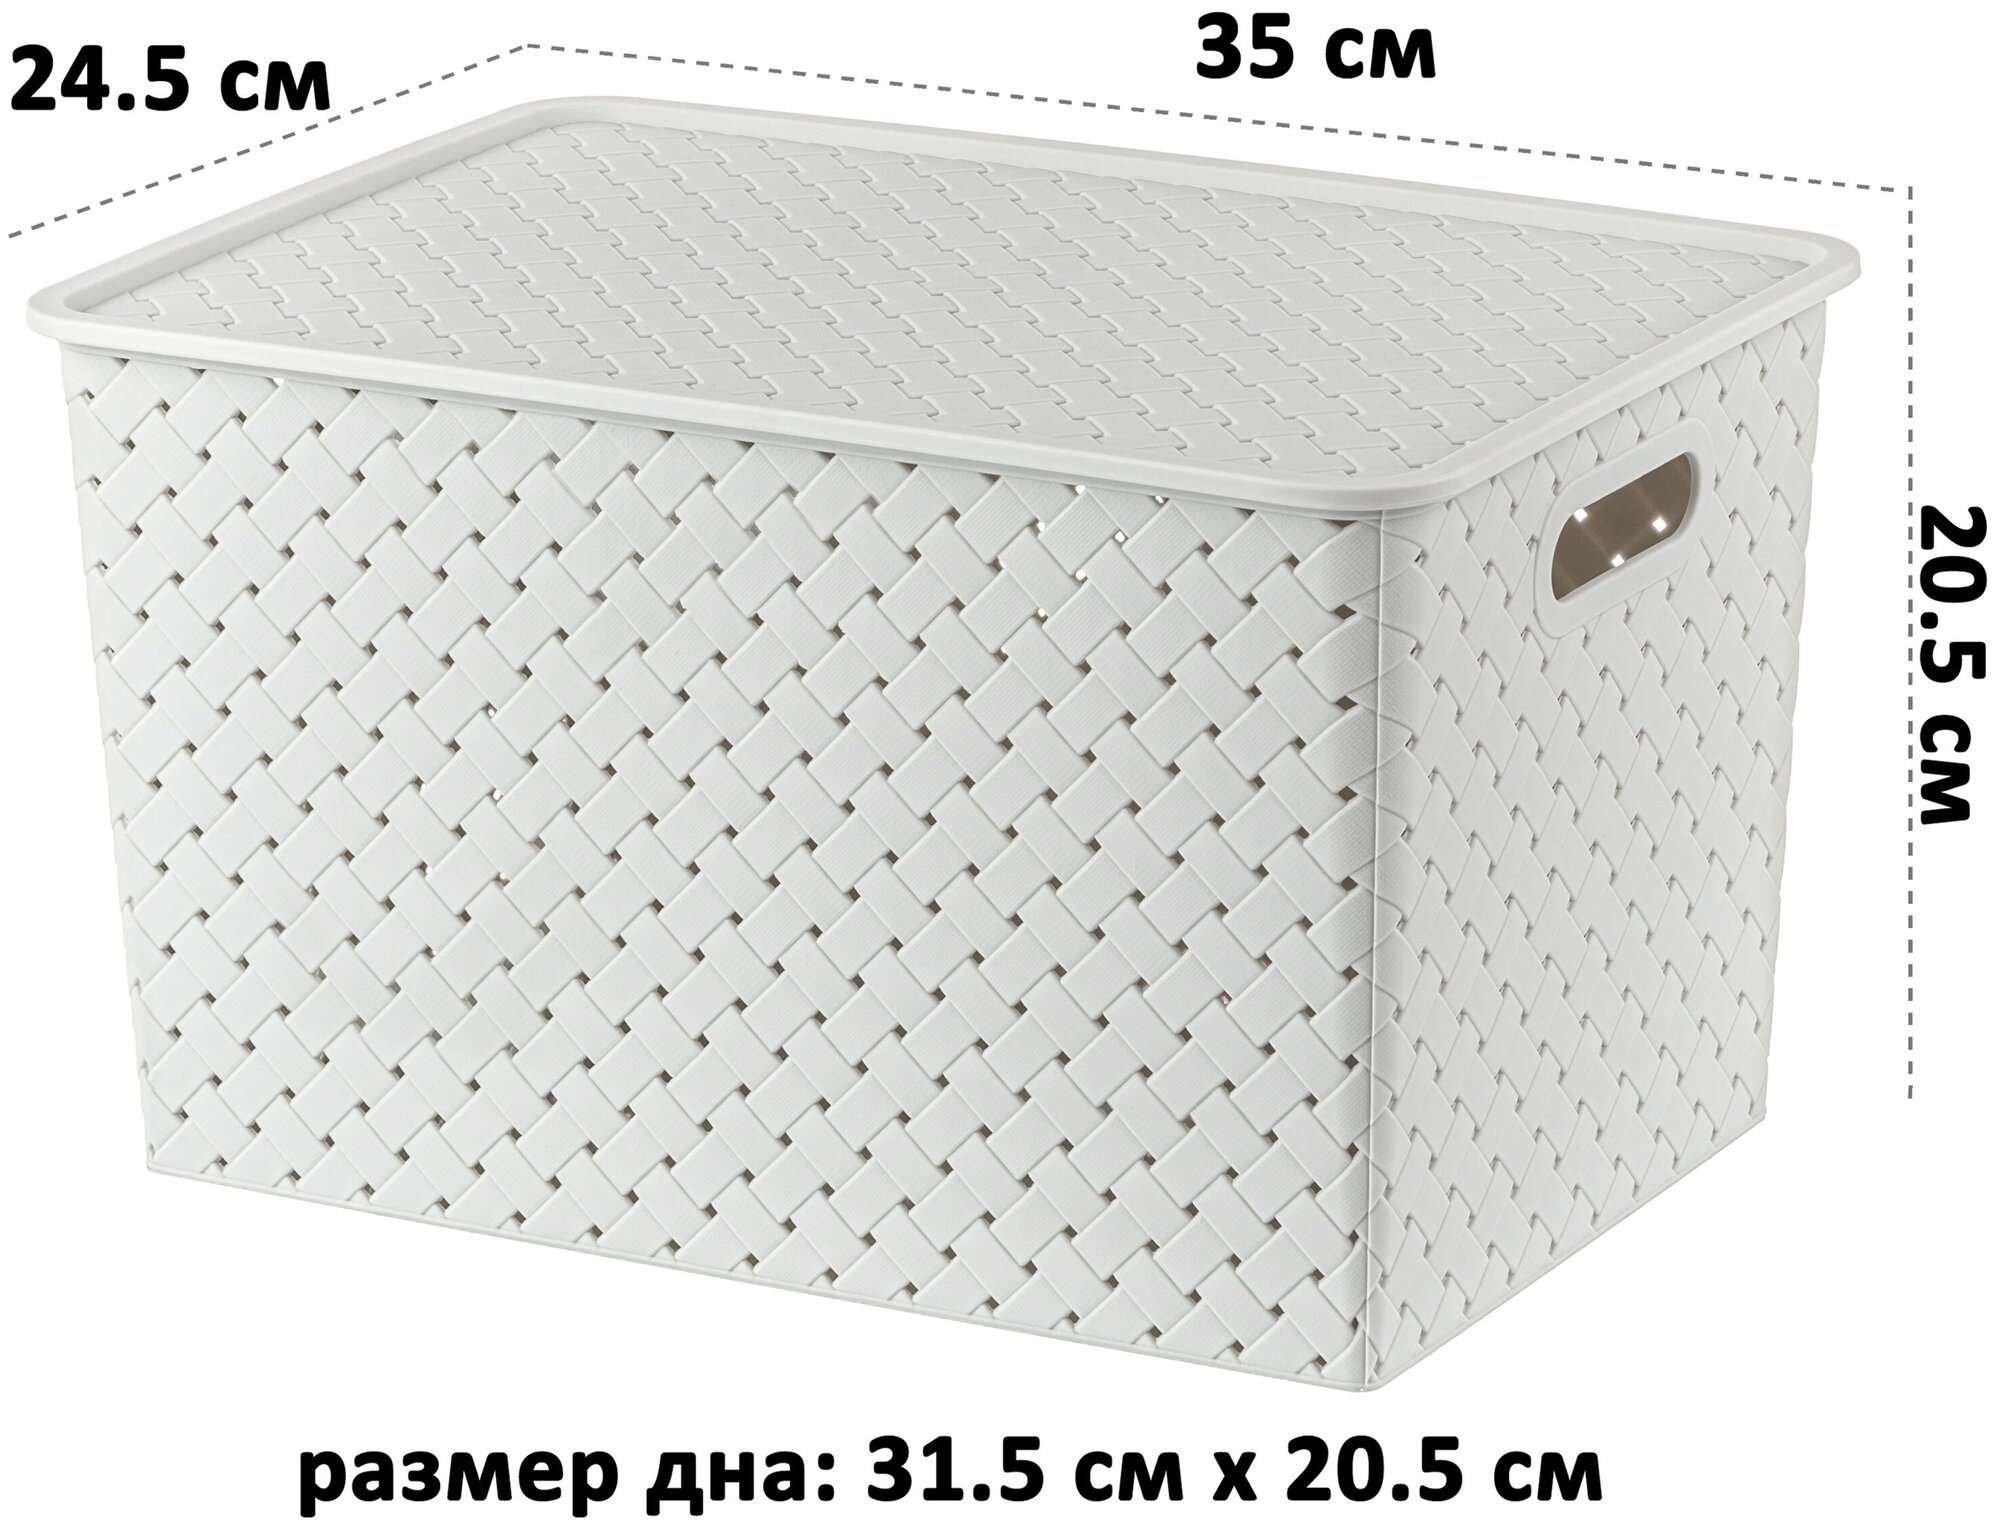 Корзинка / коробка для хранения / с крышкой 2 шт Береста 14 л 35х24,5х20,5 см El Casa, цвет светло-серый и серый, набор